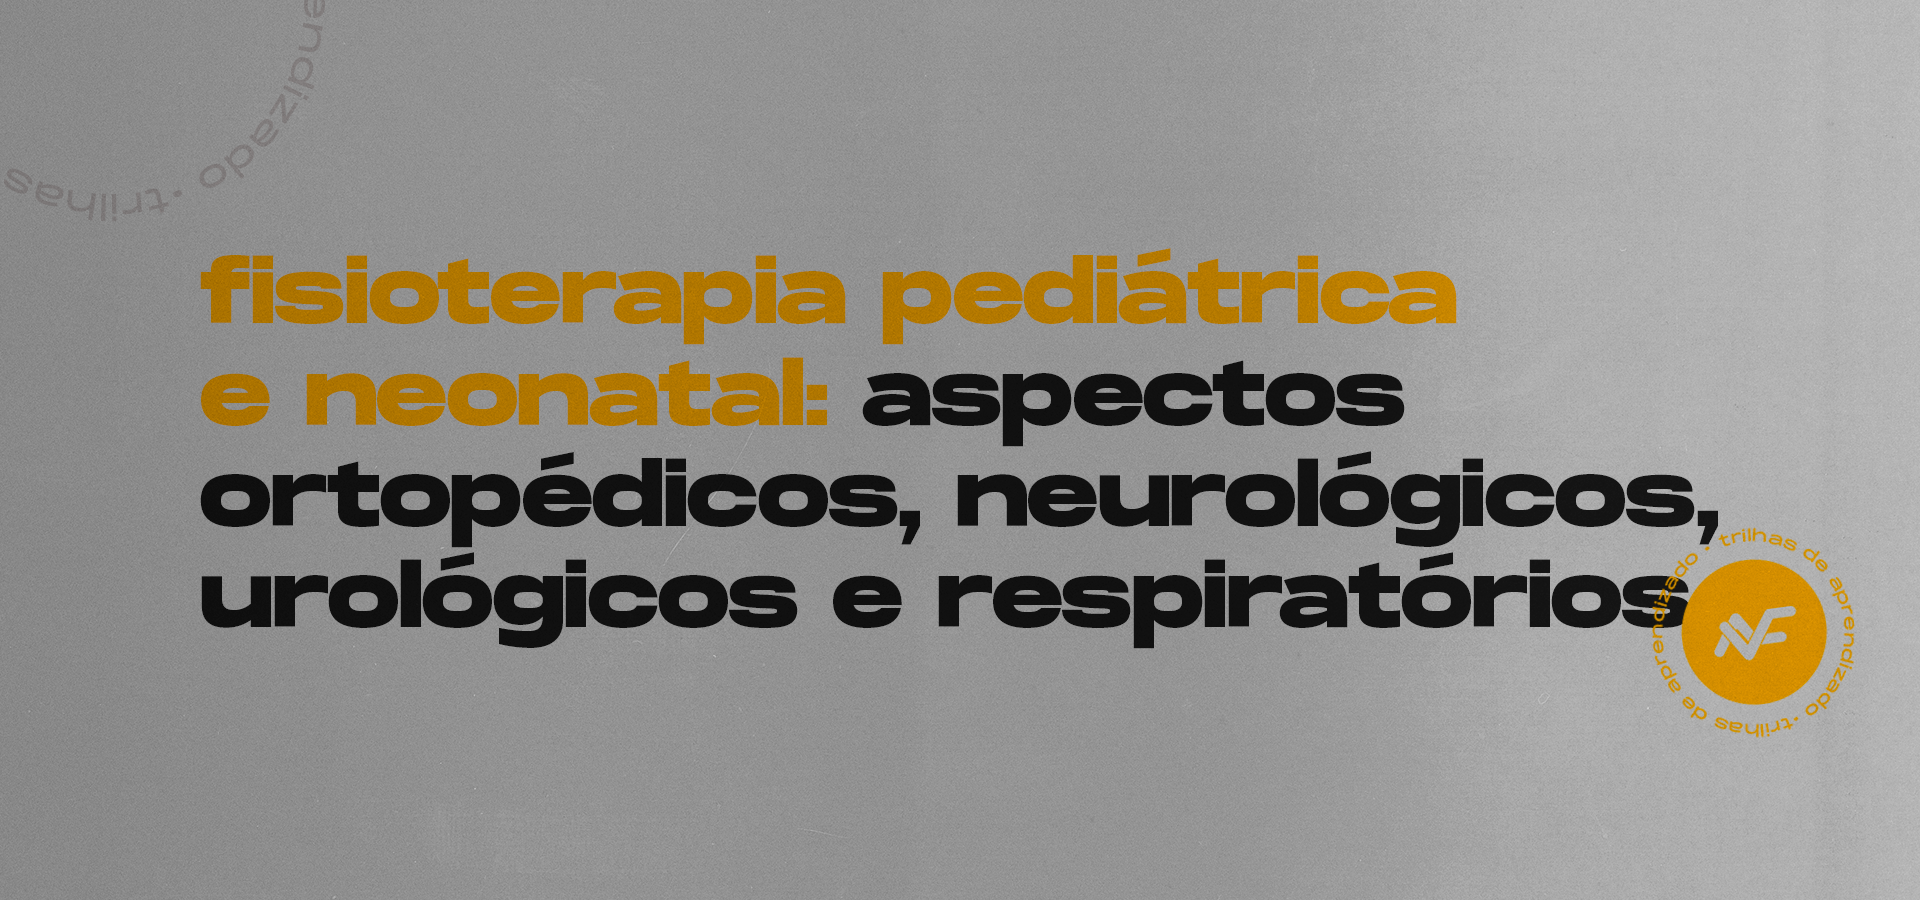 Fisioterapia pediátrica e Neonatal: Aspectos ortopédicos, neurológicos, urológicos e respiratórios